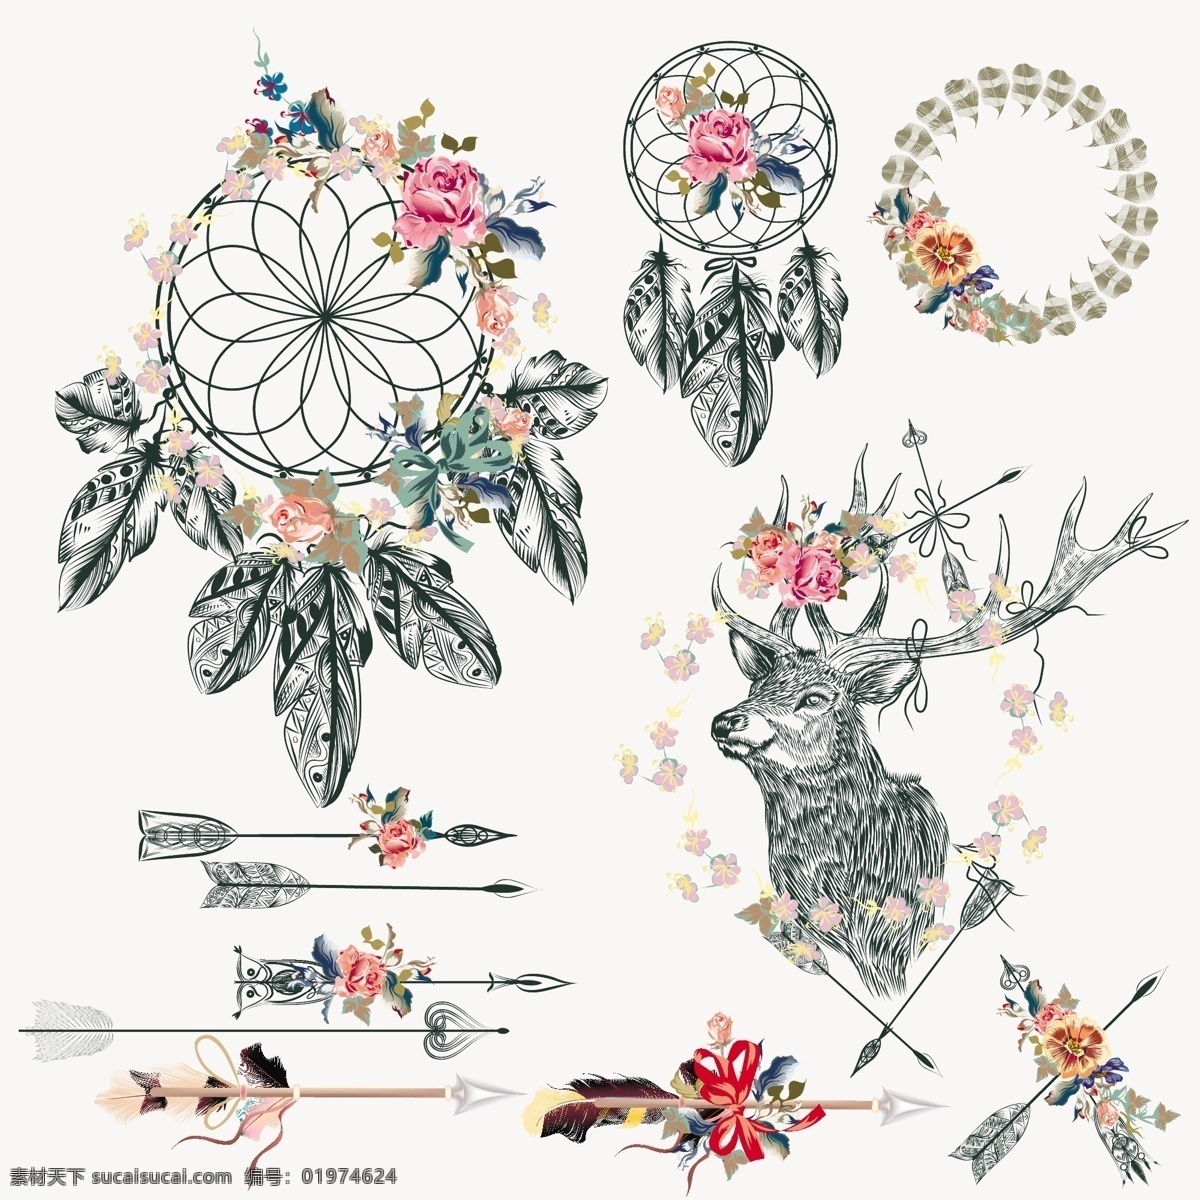 波希米亚 元素 集合 花卉 抽象的 一方面 动物 手绘 饰品 鹿 羽毛 装饰 印度 绘画 民族元素 花饰 梦想 部落 观赏